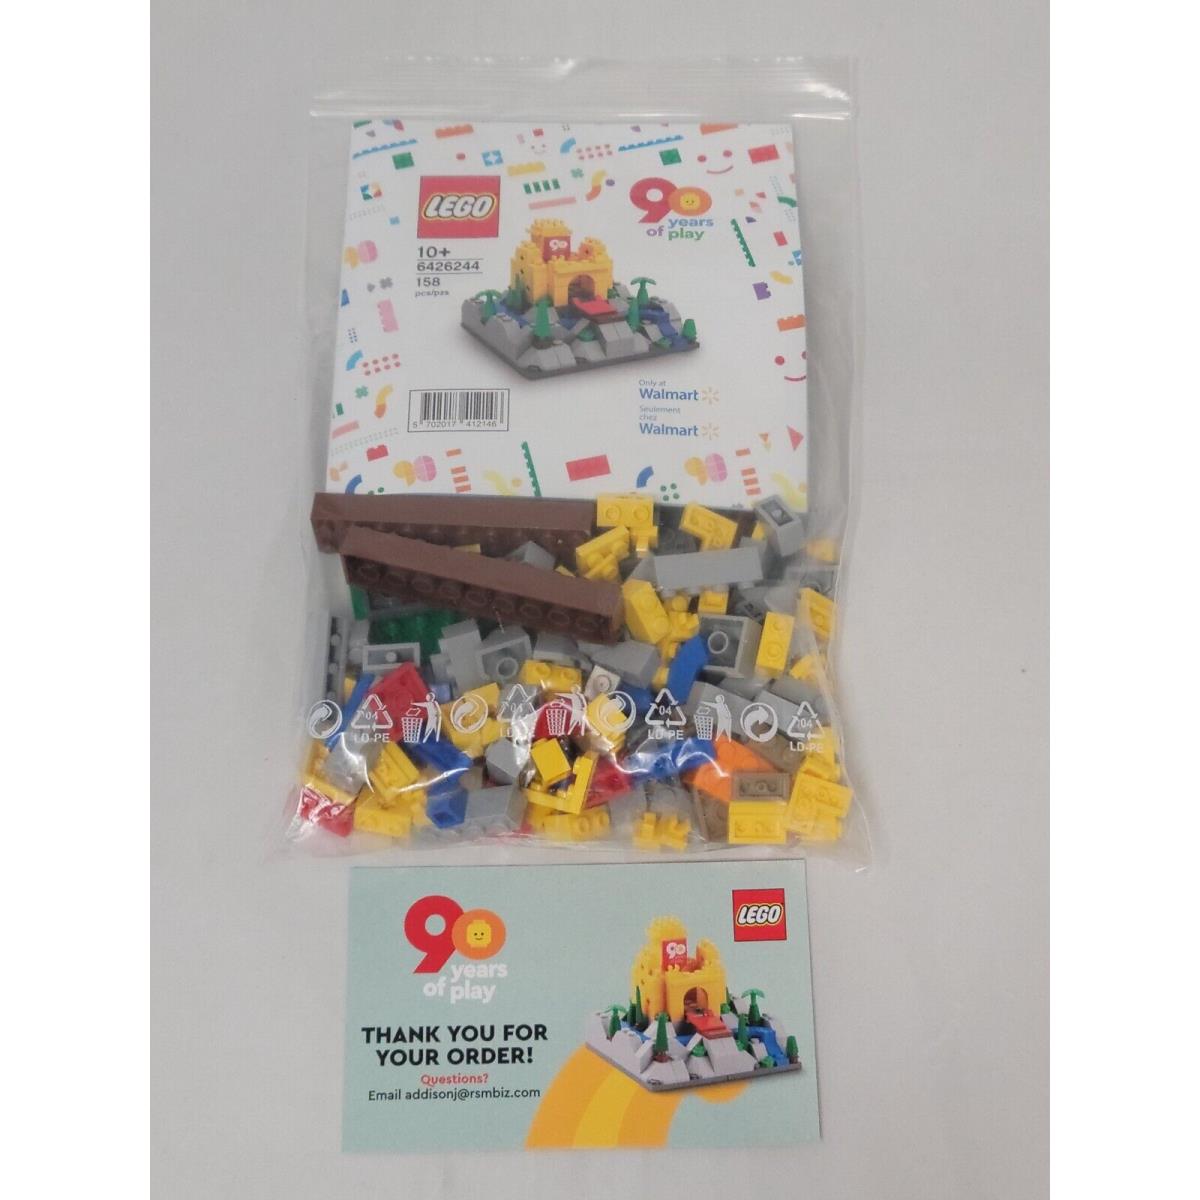 Lego 6426244 90th Anniversary Mini Castle Walmart Mail-in Exclusive 80146